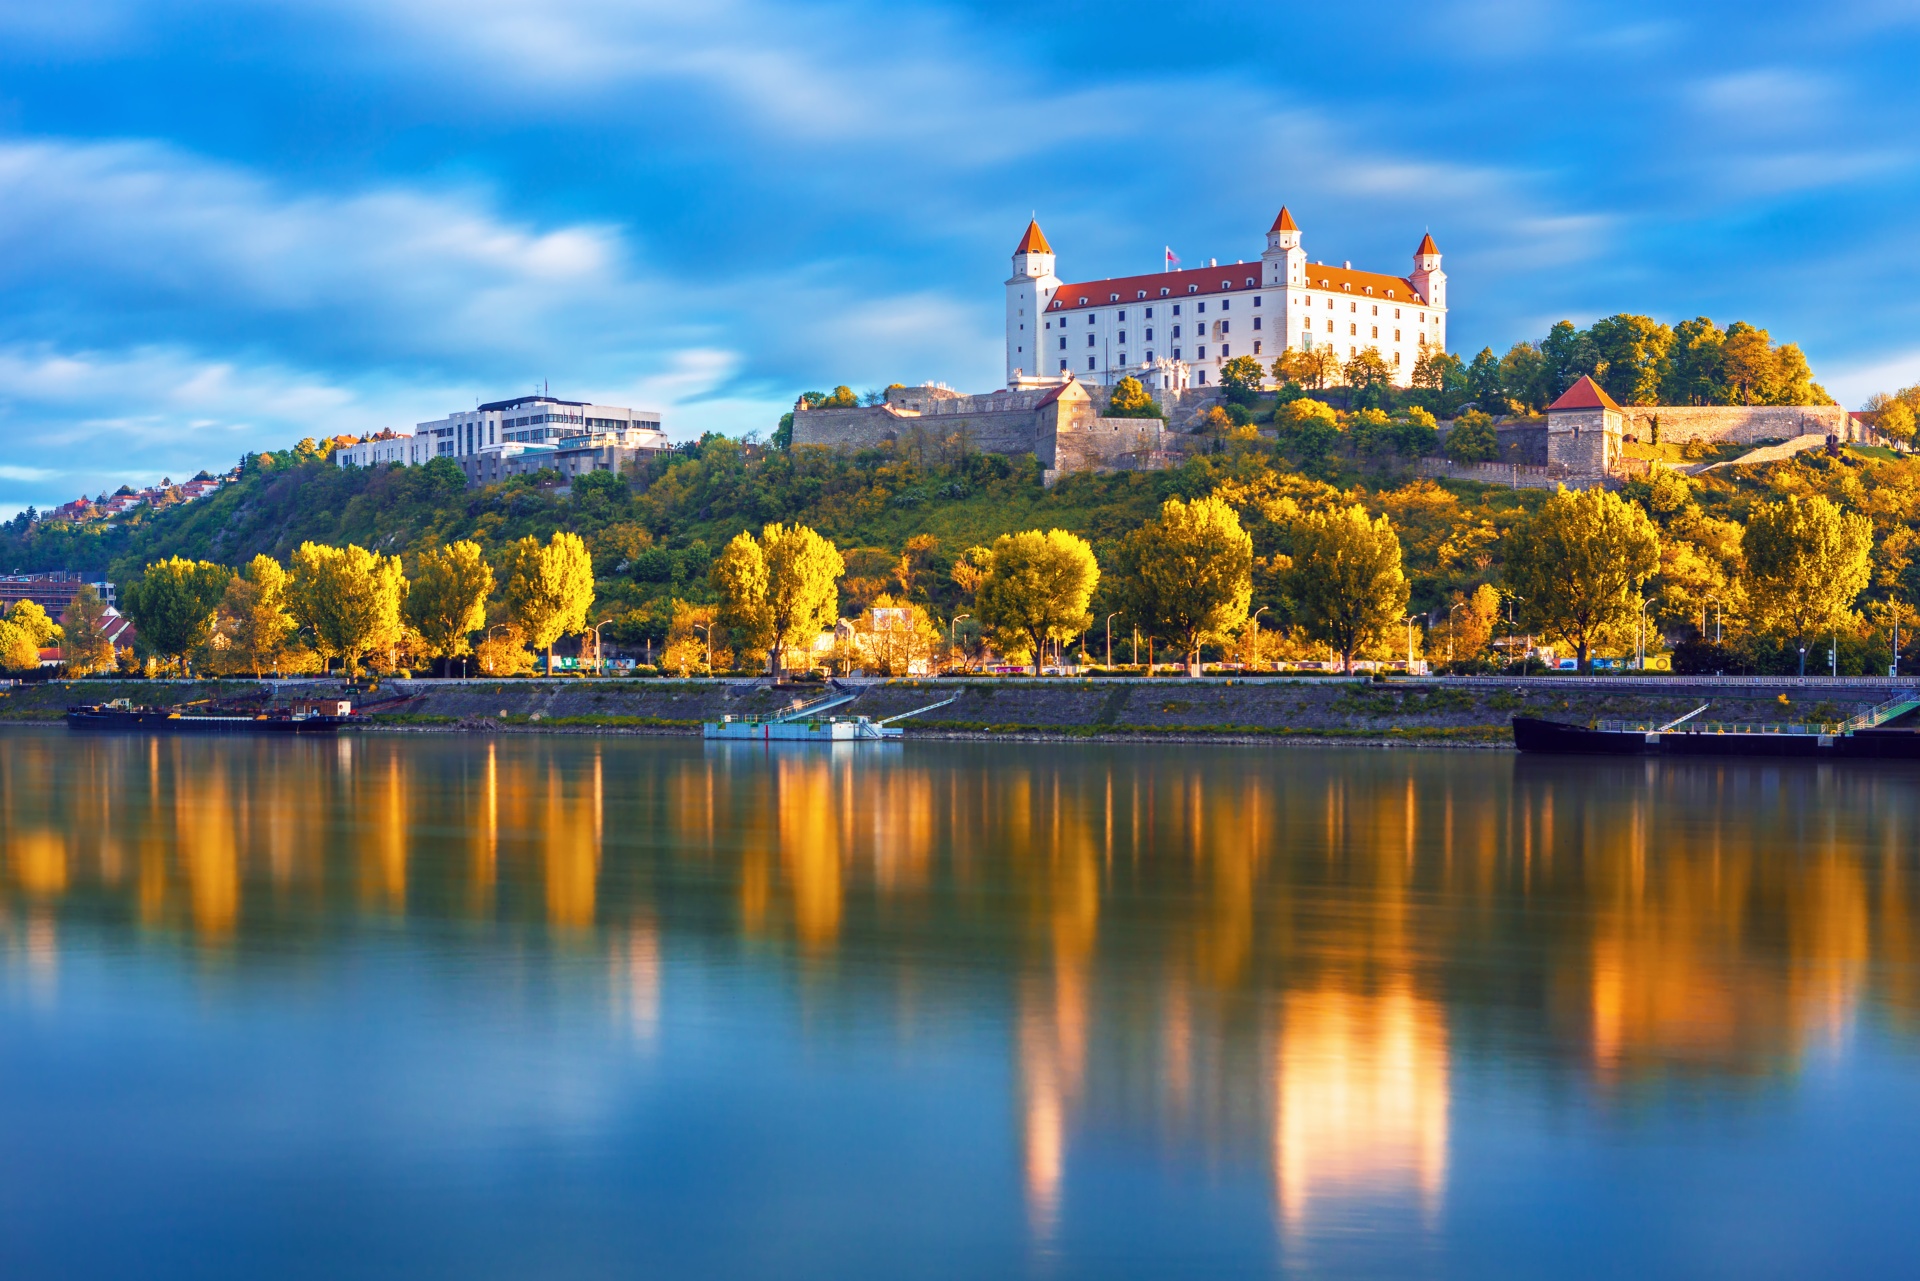 reka donava, ki teče skozi bratislavo, v jesenskih barvah, nad mestom se dviga bratislavski grad